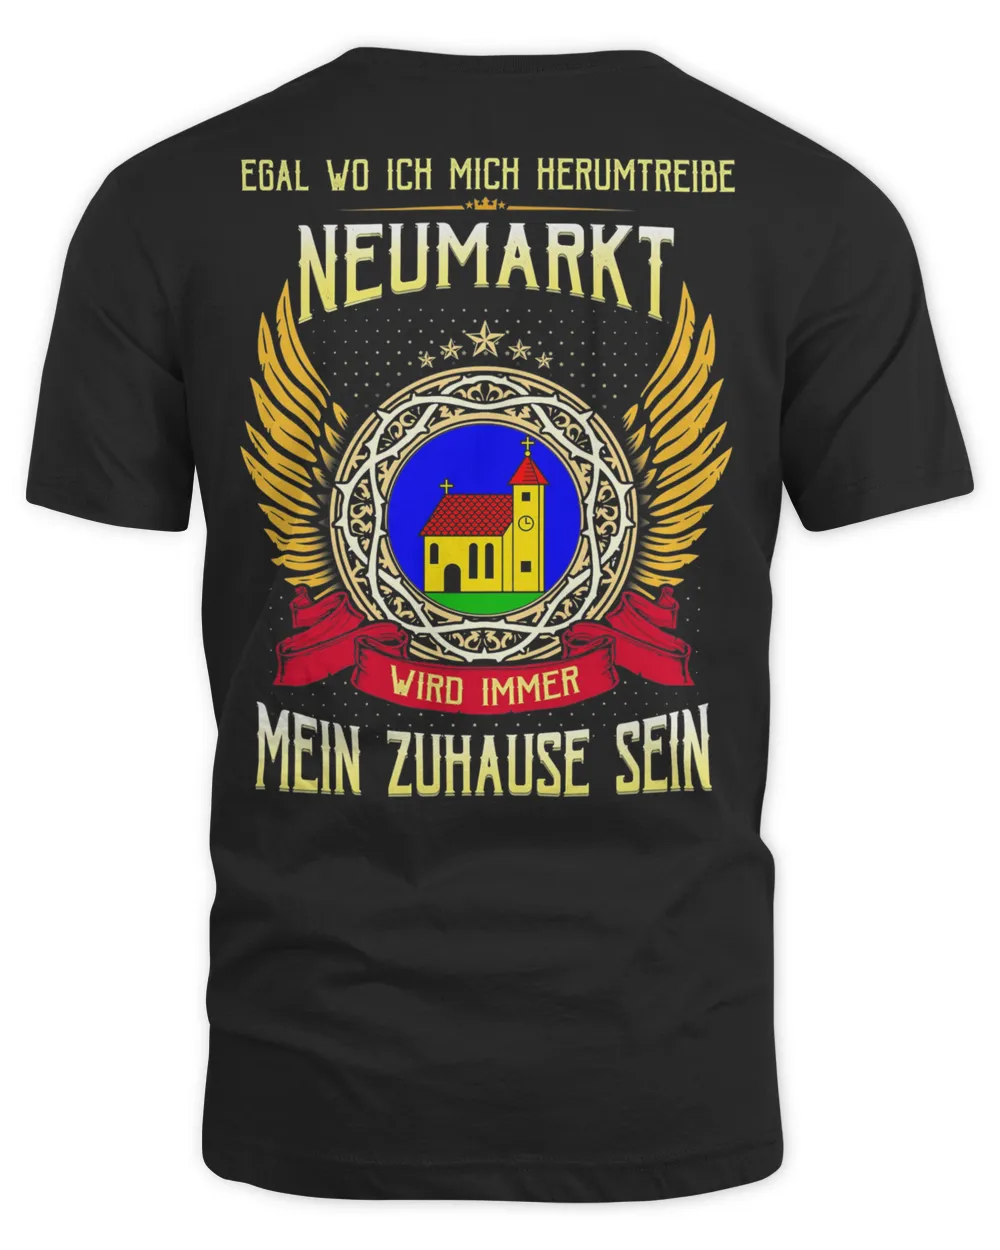 Official Egal Wo Ich Mich Herumtreibe Neumarkt Wird Immer Mein Zuhause Sein Shirt